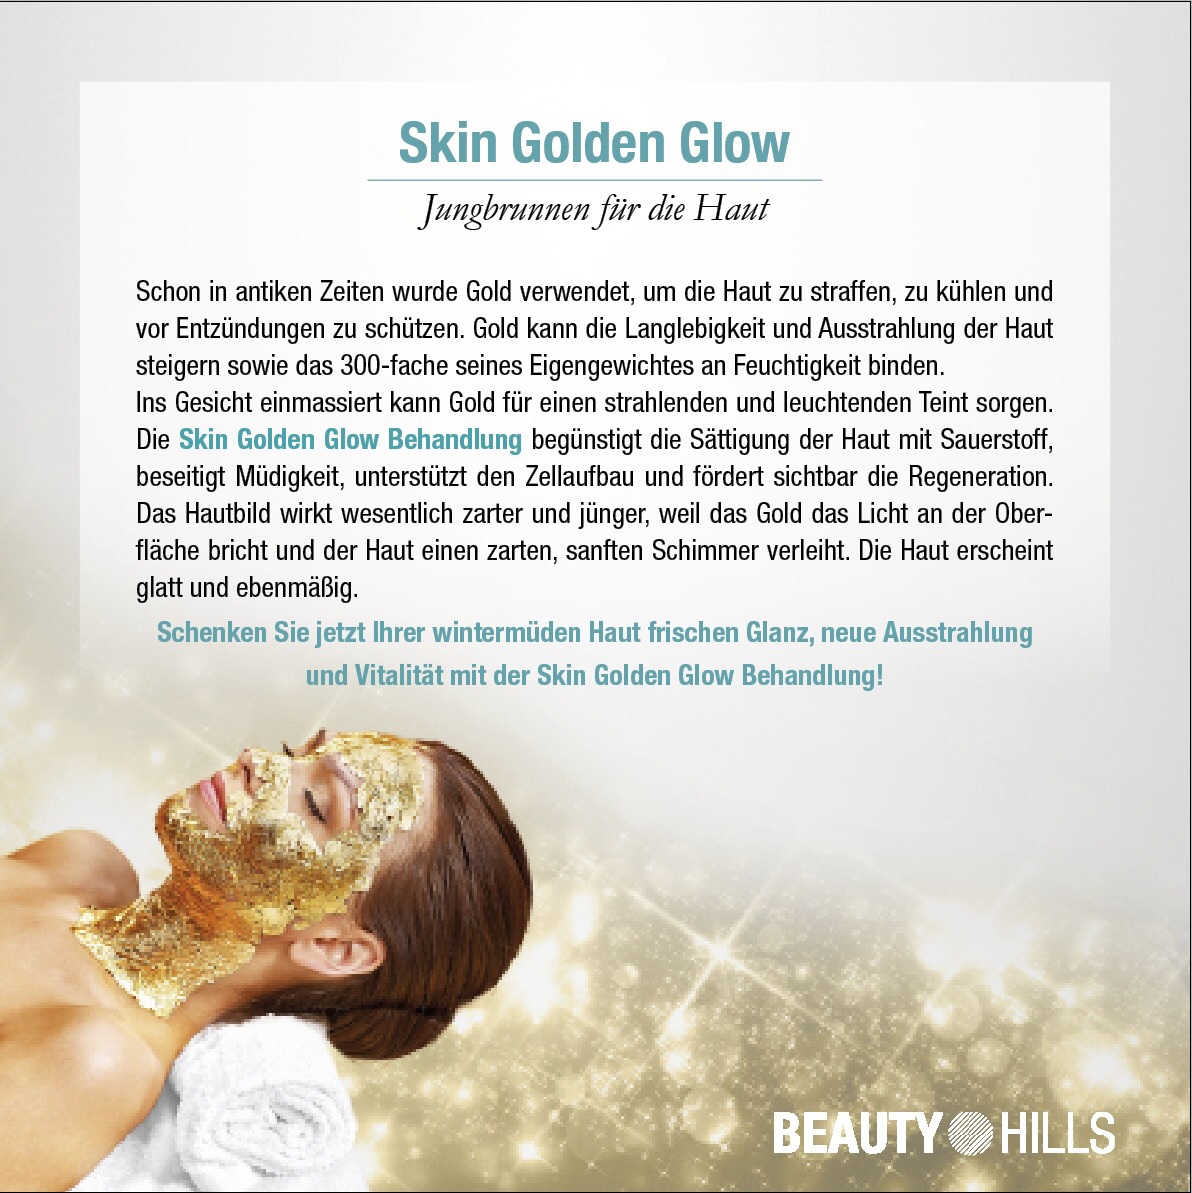 Skin Golden Glow-Behandlung!

-nicht nur Luxuriös, sondern auch effektiv